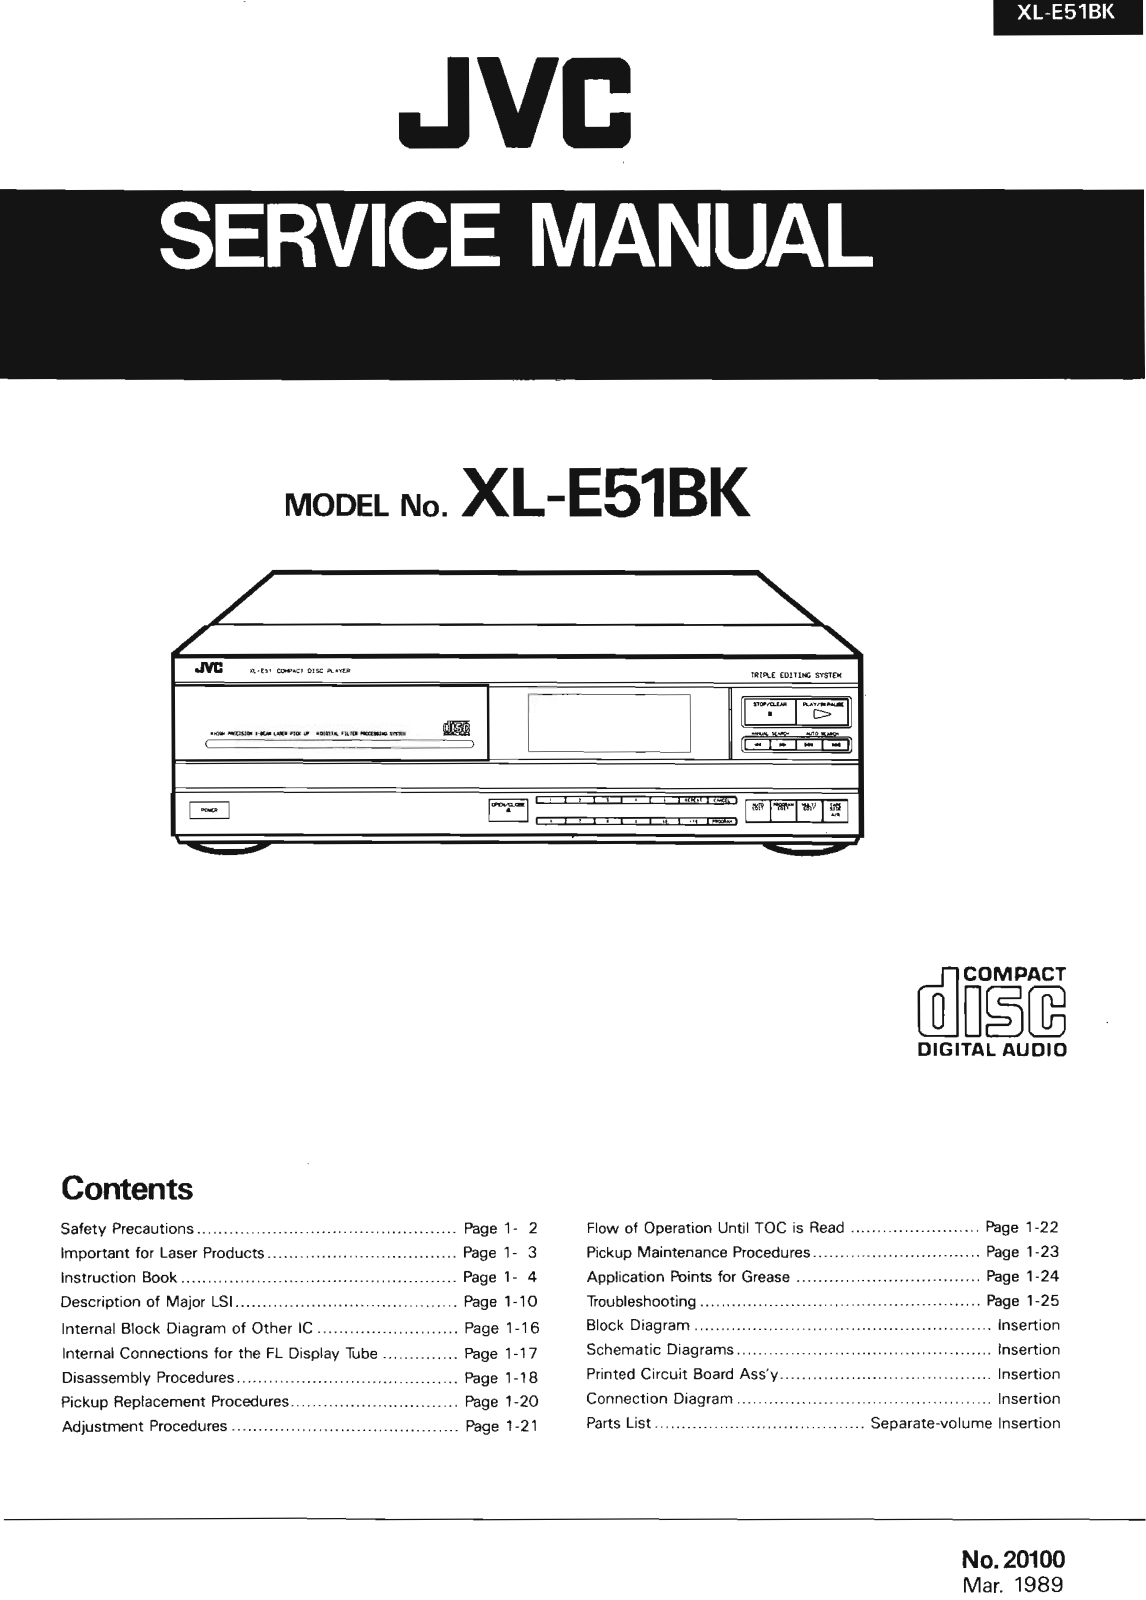 Jvc XL-E51-BK Service Manual